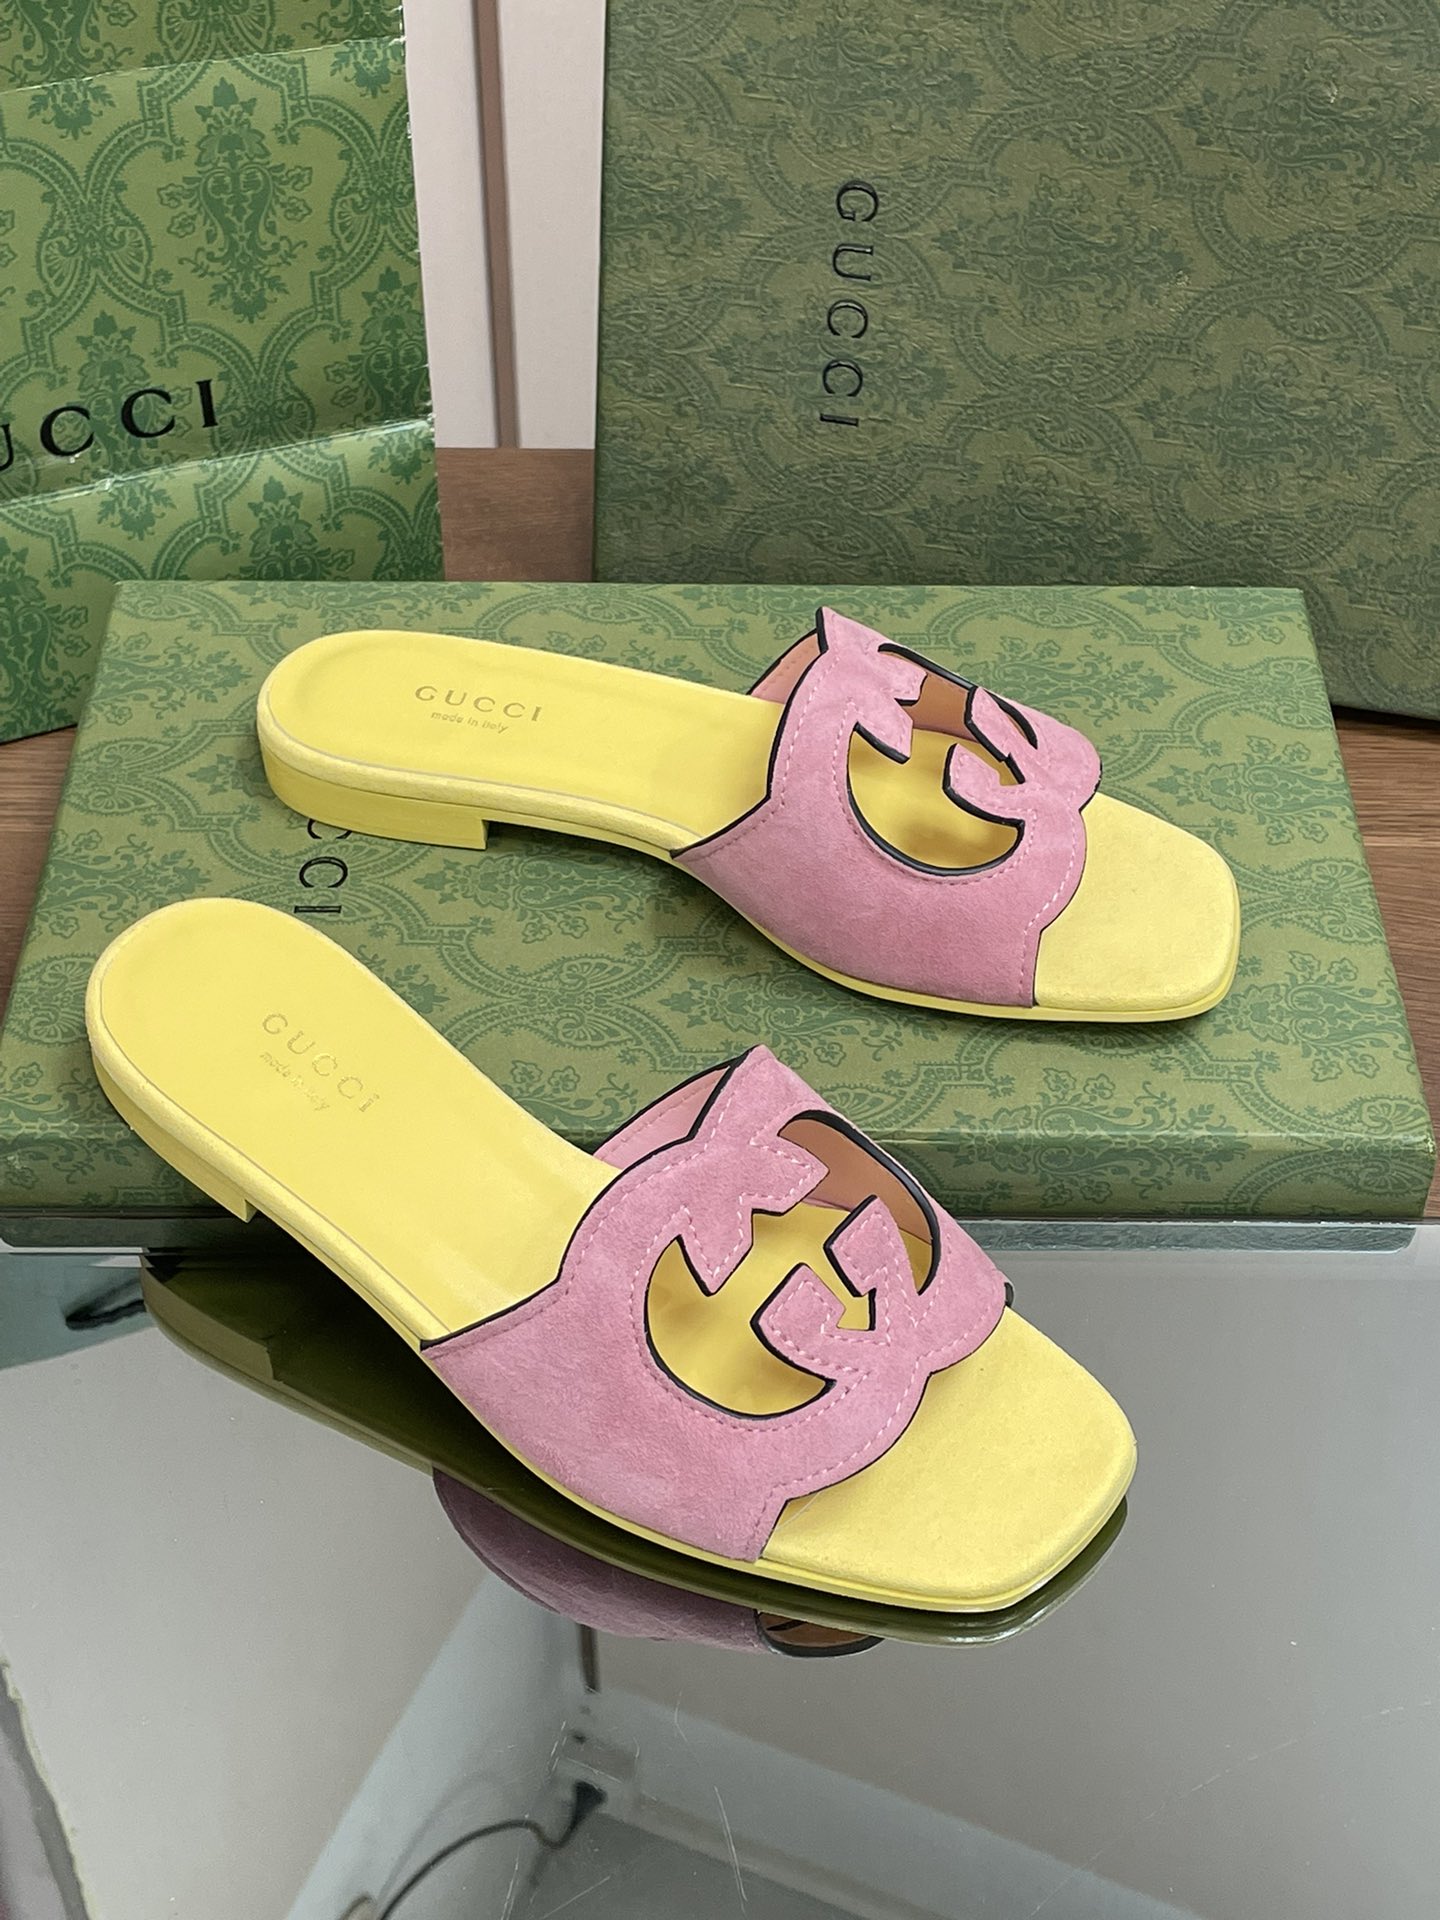 Gucci Chaussures Pantoufles Travail ouvert Genuine Leather Peau de mouton Série d’été